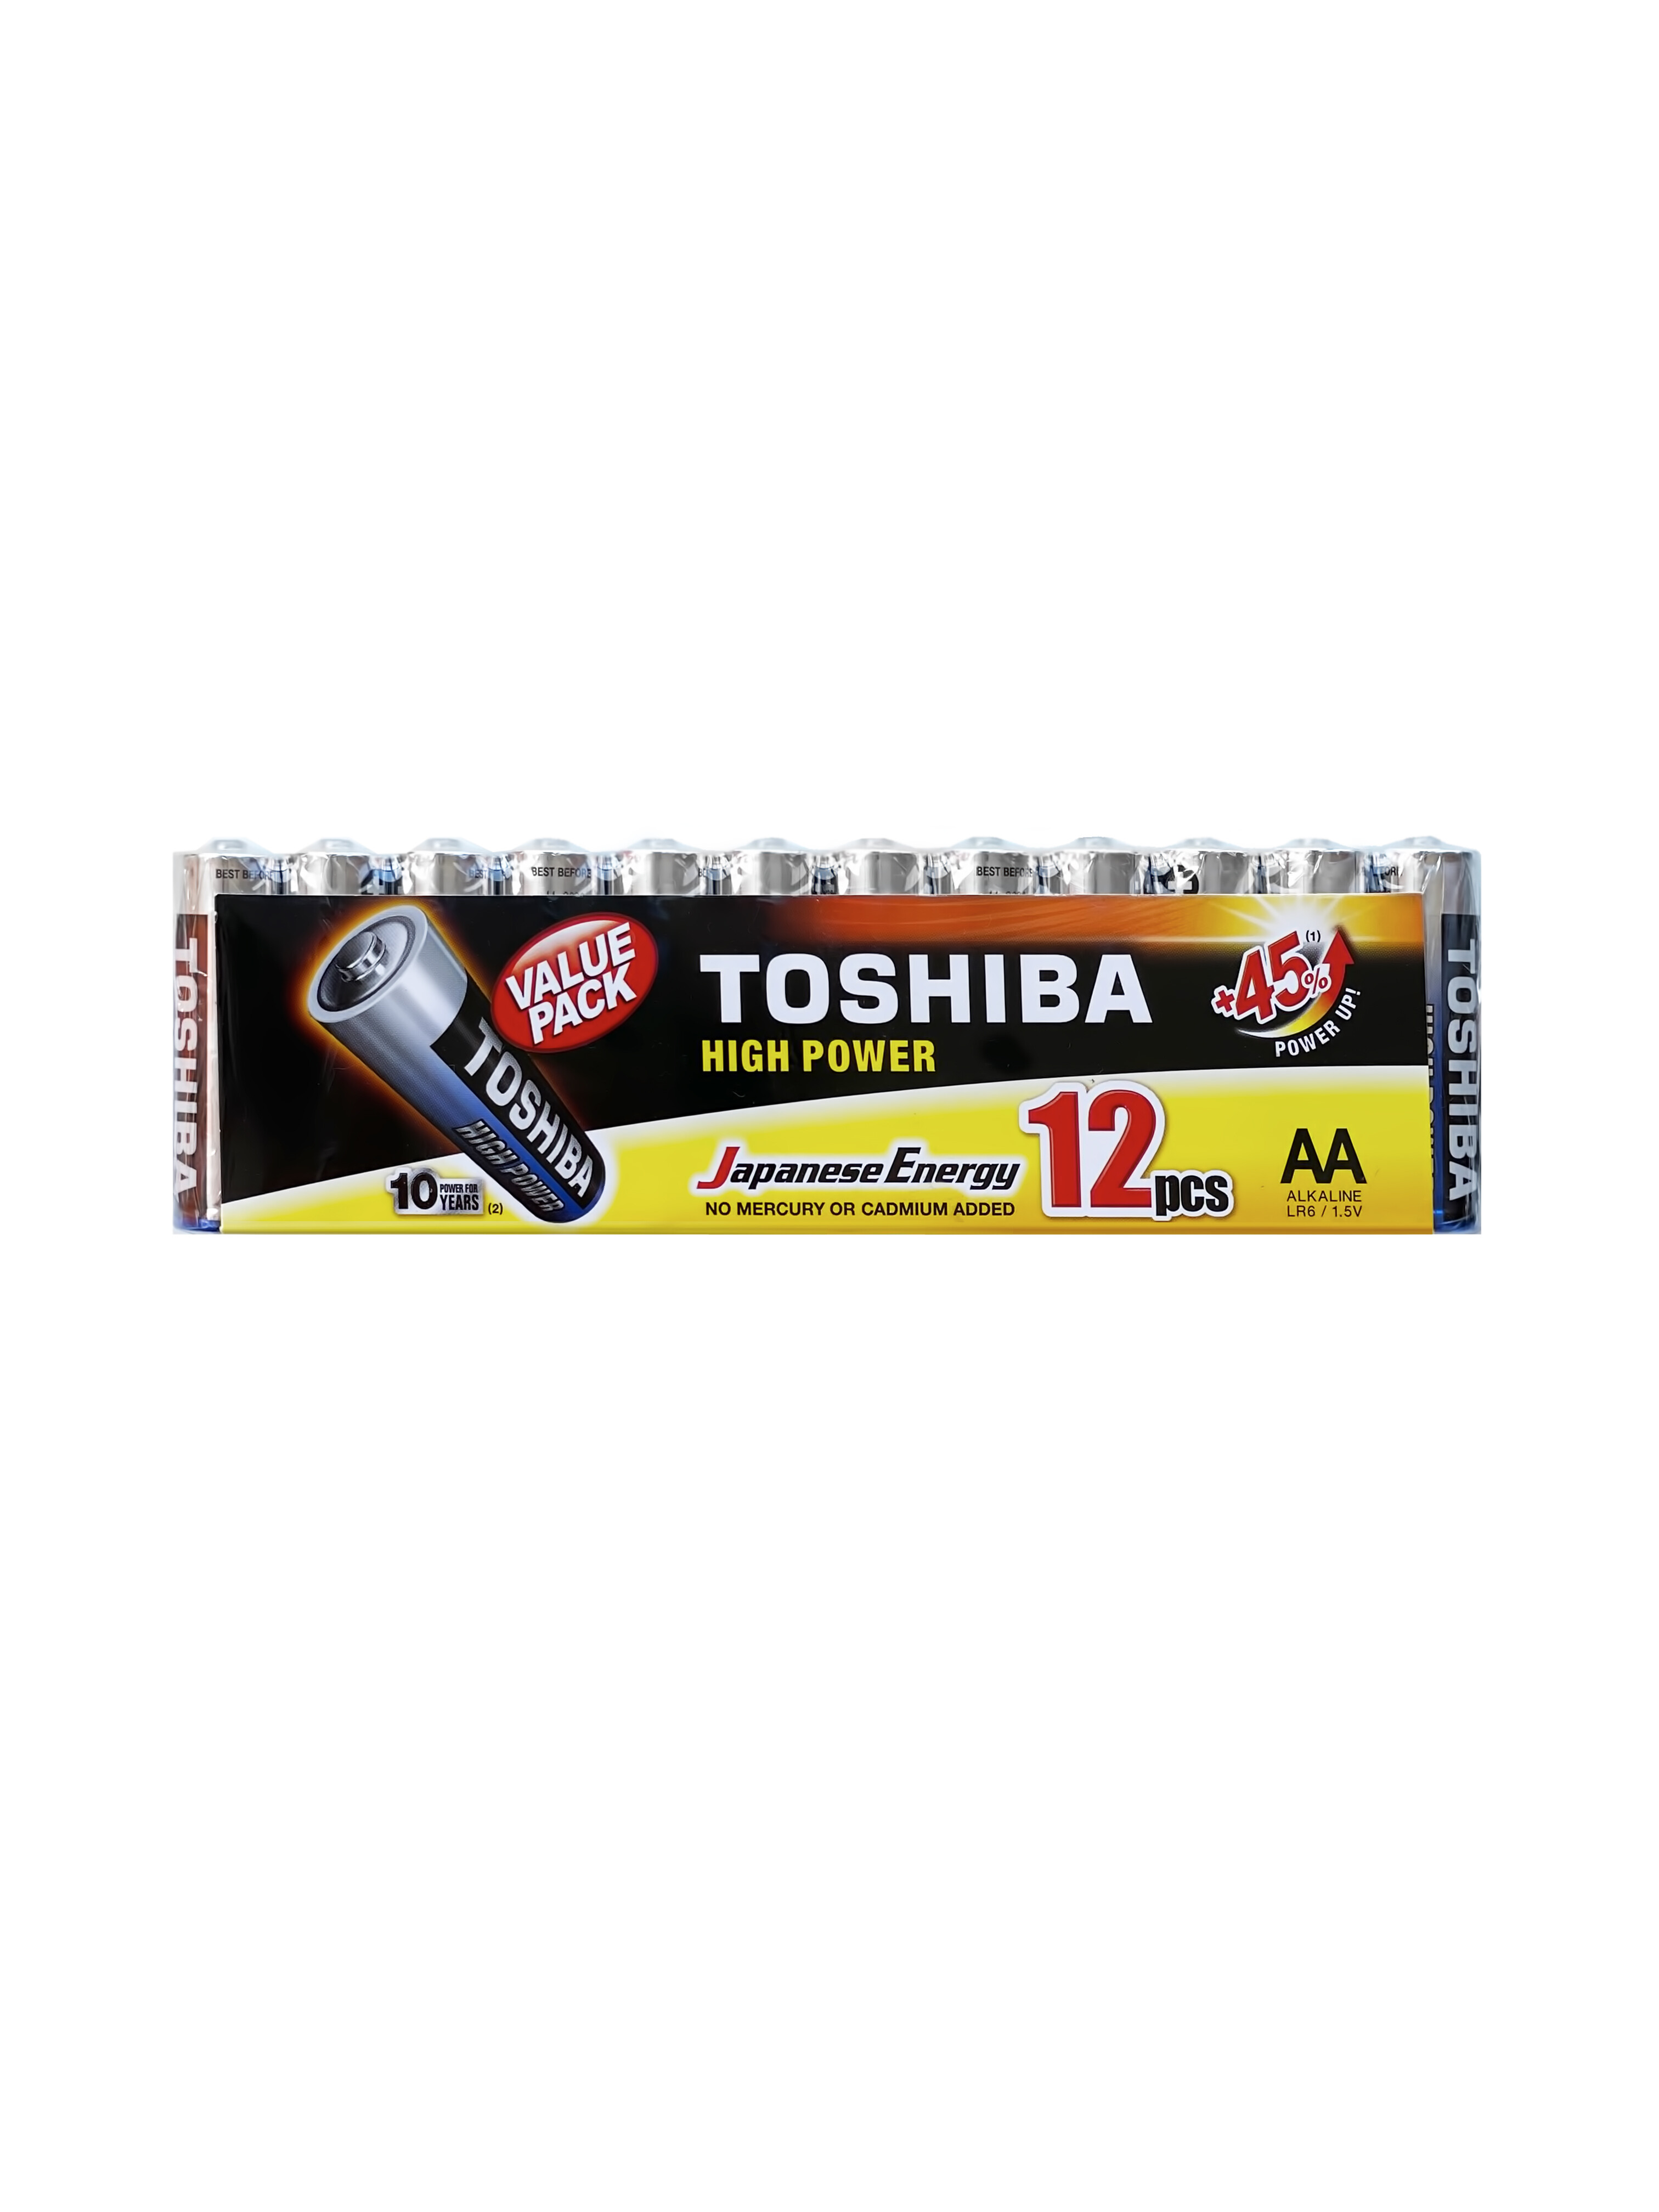 Батарейки Toshiba LR6 щелочные (alkaline) ПАЛЬЧИК High Power (12шт) AA 1,5V батарейки алкалиновые duracell basic ааa lr03 12 штук